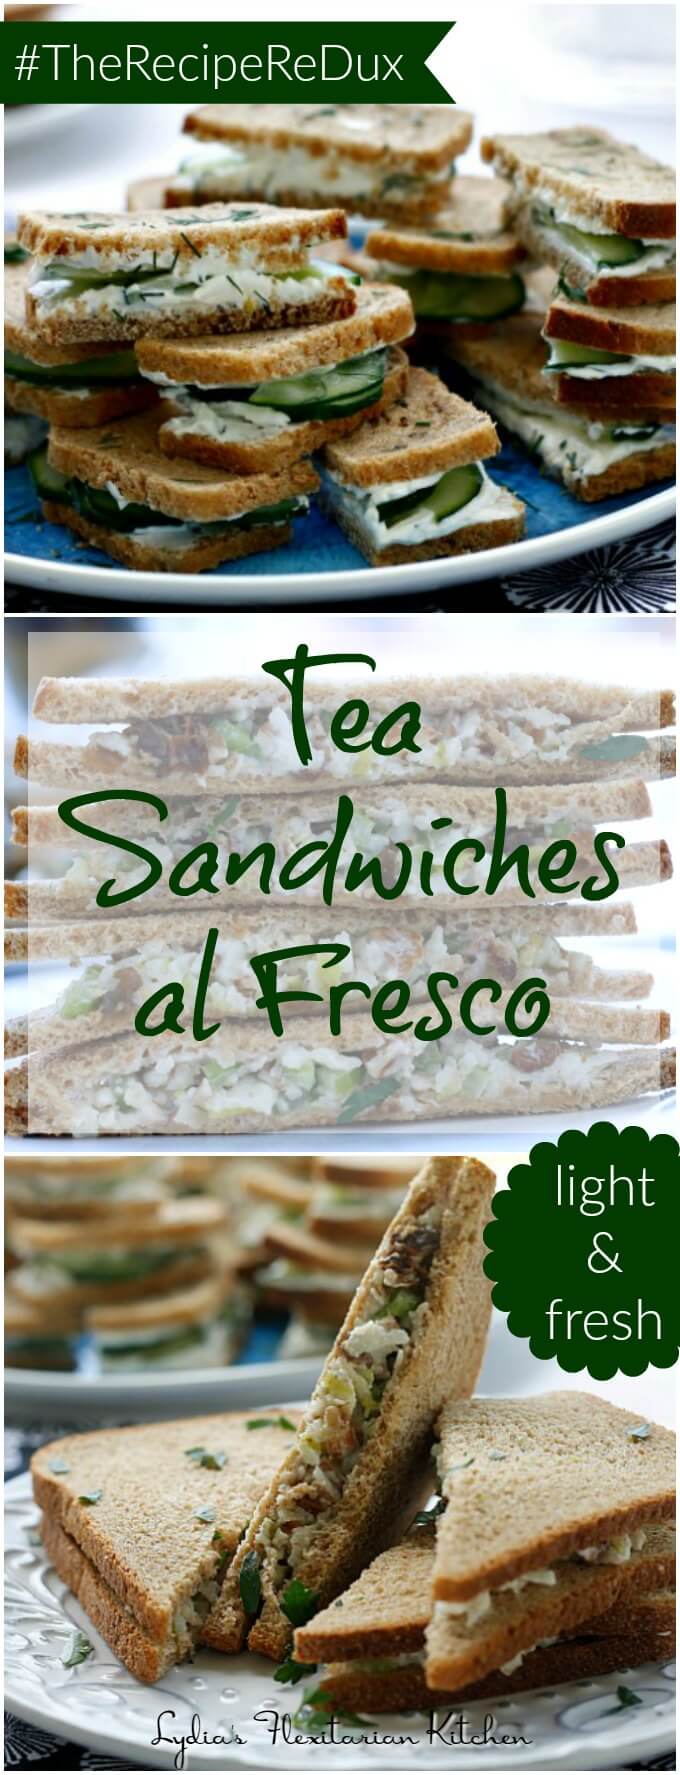 Tea Sandwiches al Fresco ~ Two Light and Fresh Choices ~ #TheRecipeReDux ~ Lydia's Flexitarian Kitchen